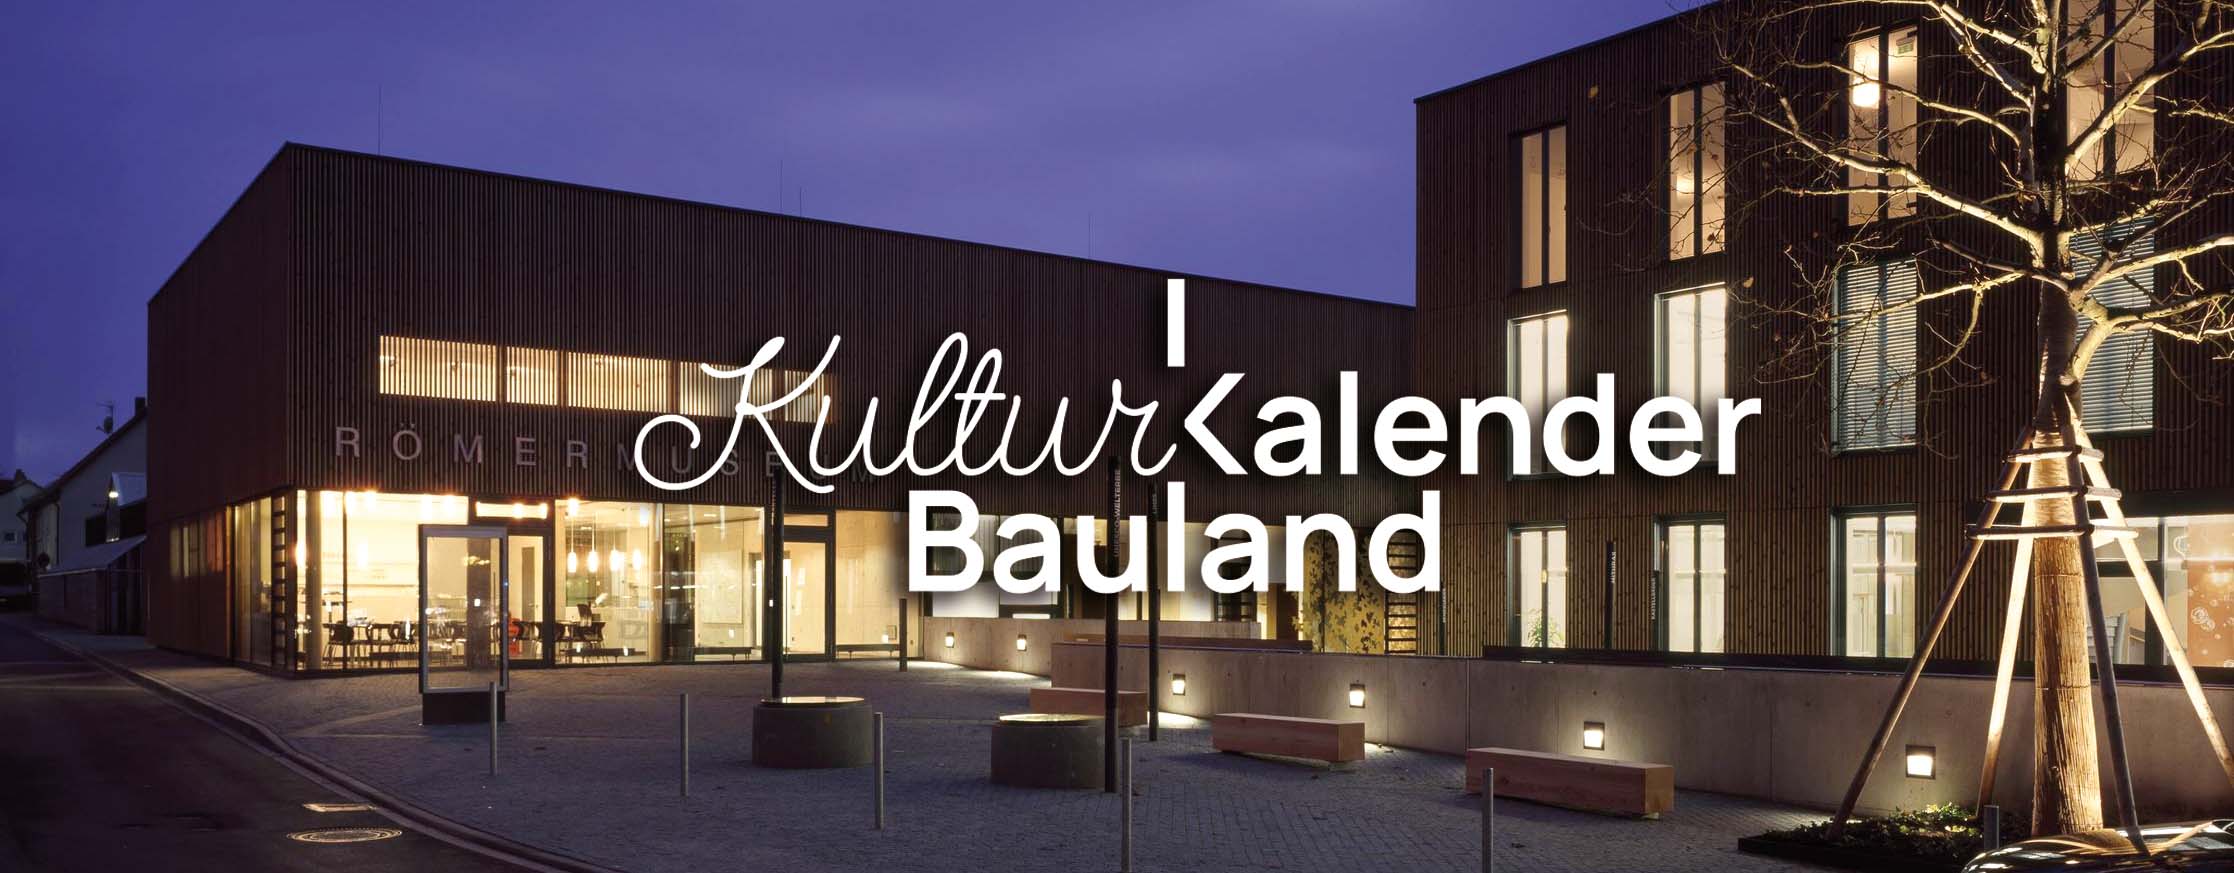 Kuturkalender Bauland - Abendliche Veranstaltungen in Osterburken